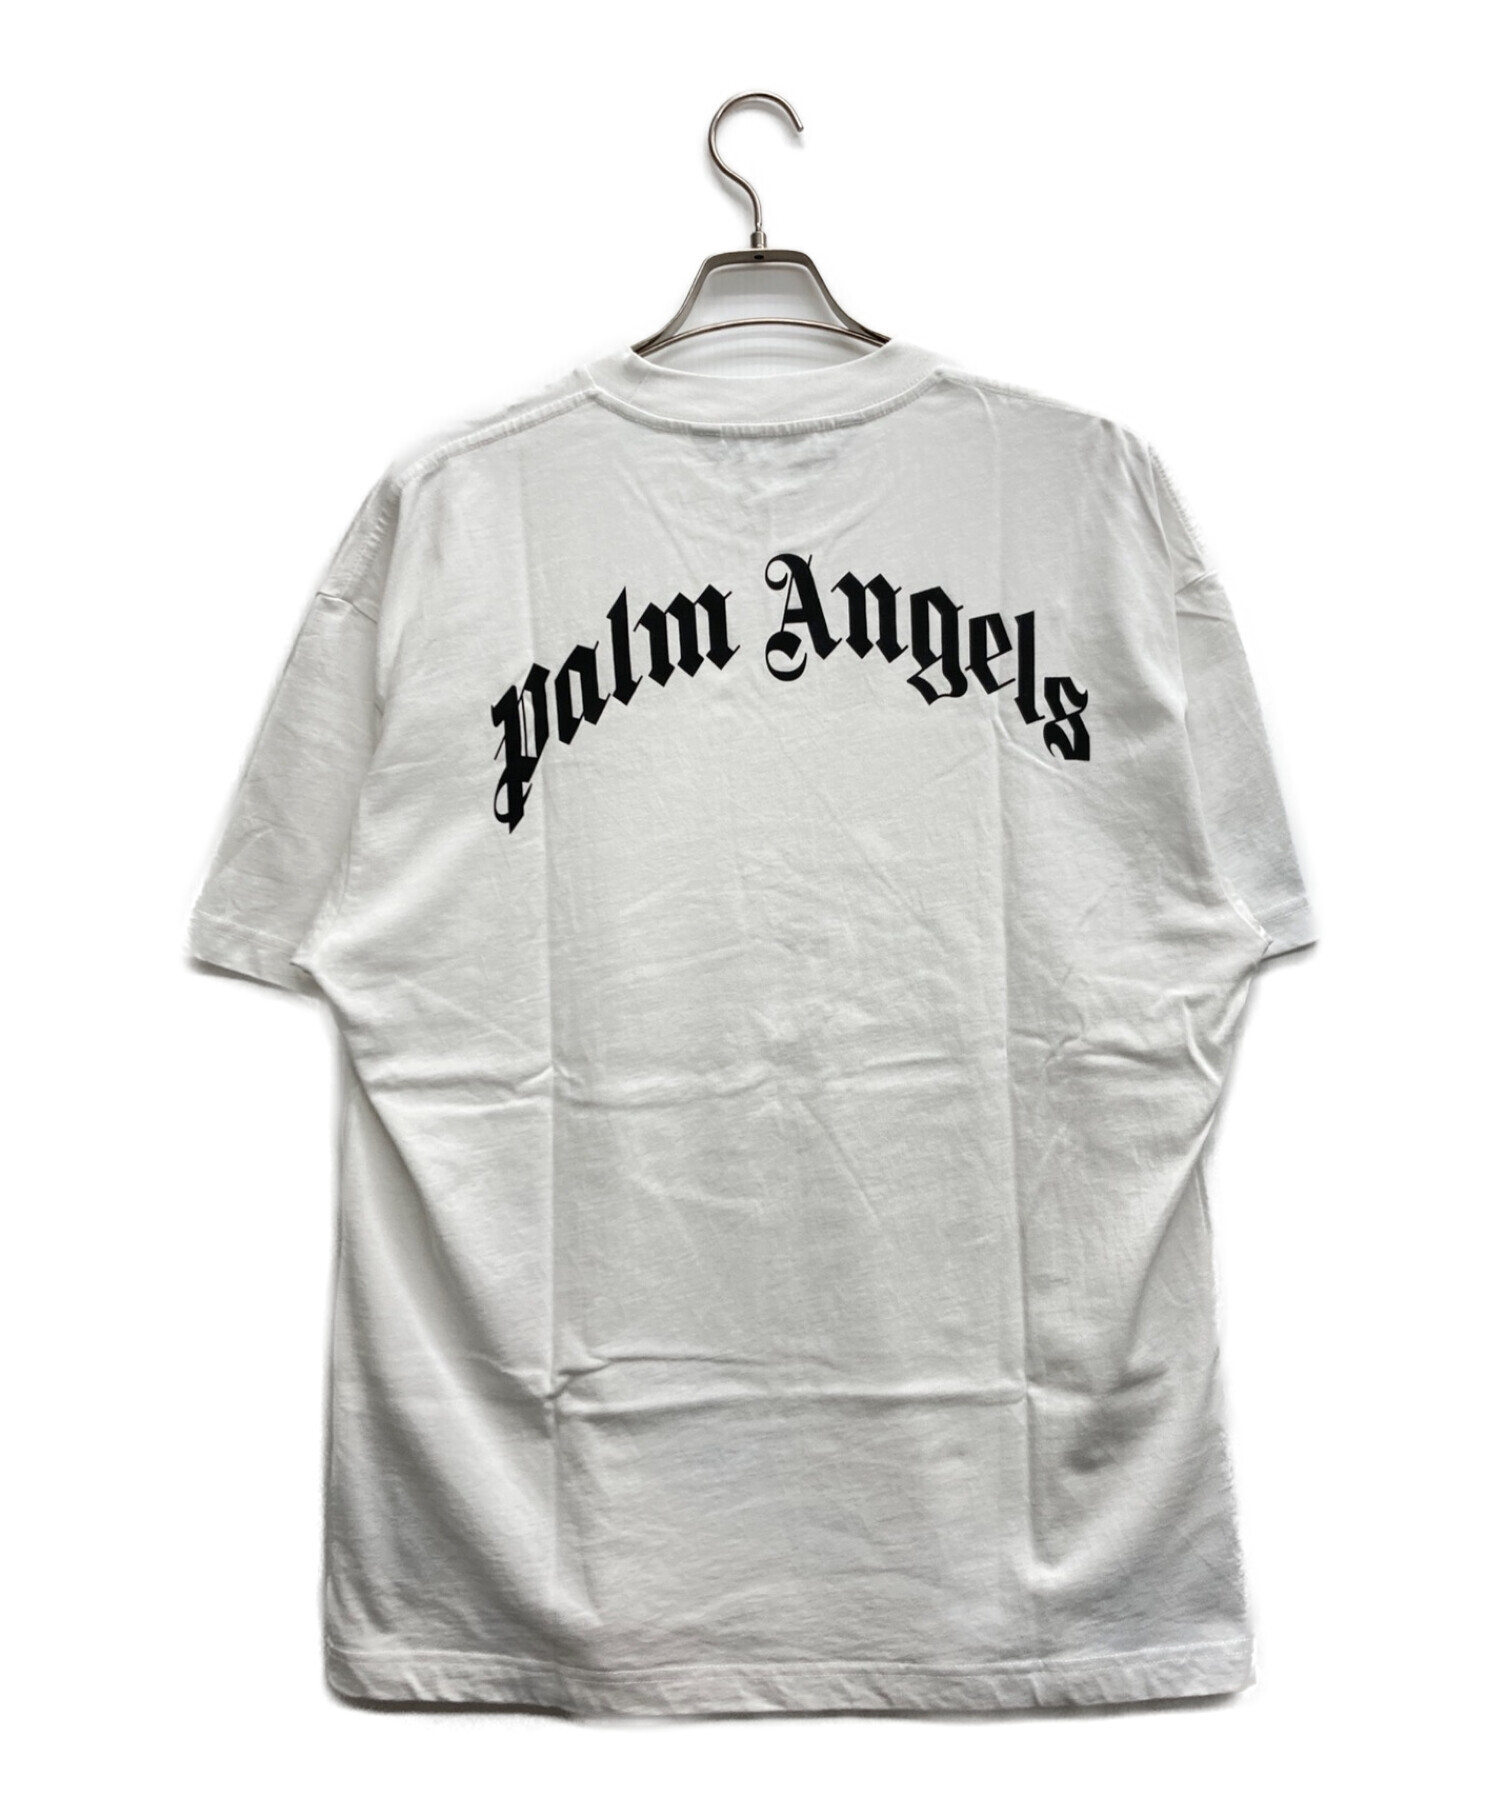 Palm Angels (パーム エンジェルス) ベアープリントTシャツ ホワイト サイズ:L